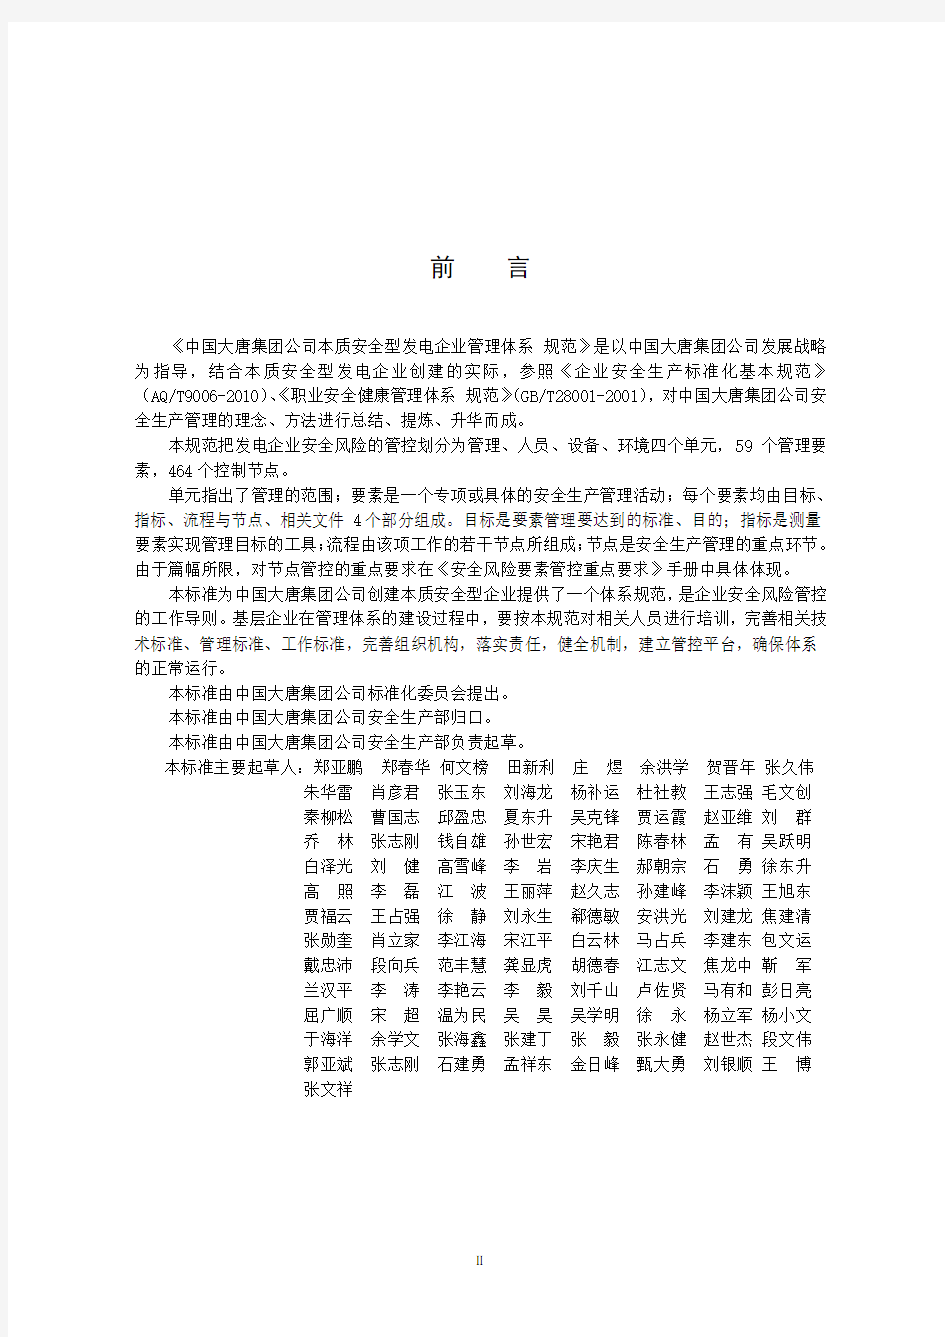 中国大唐集团公司本质安全型发电企业管理体系规范